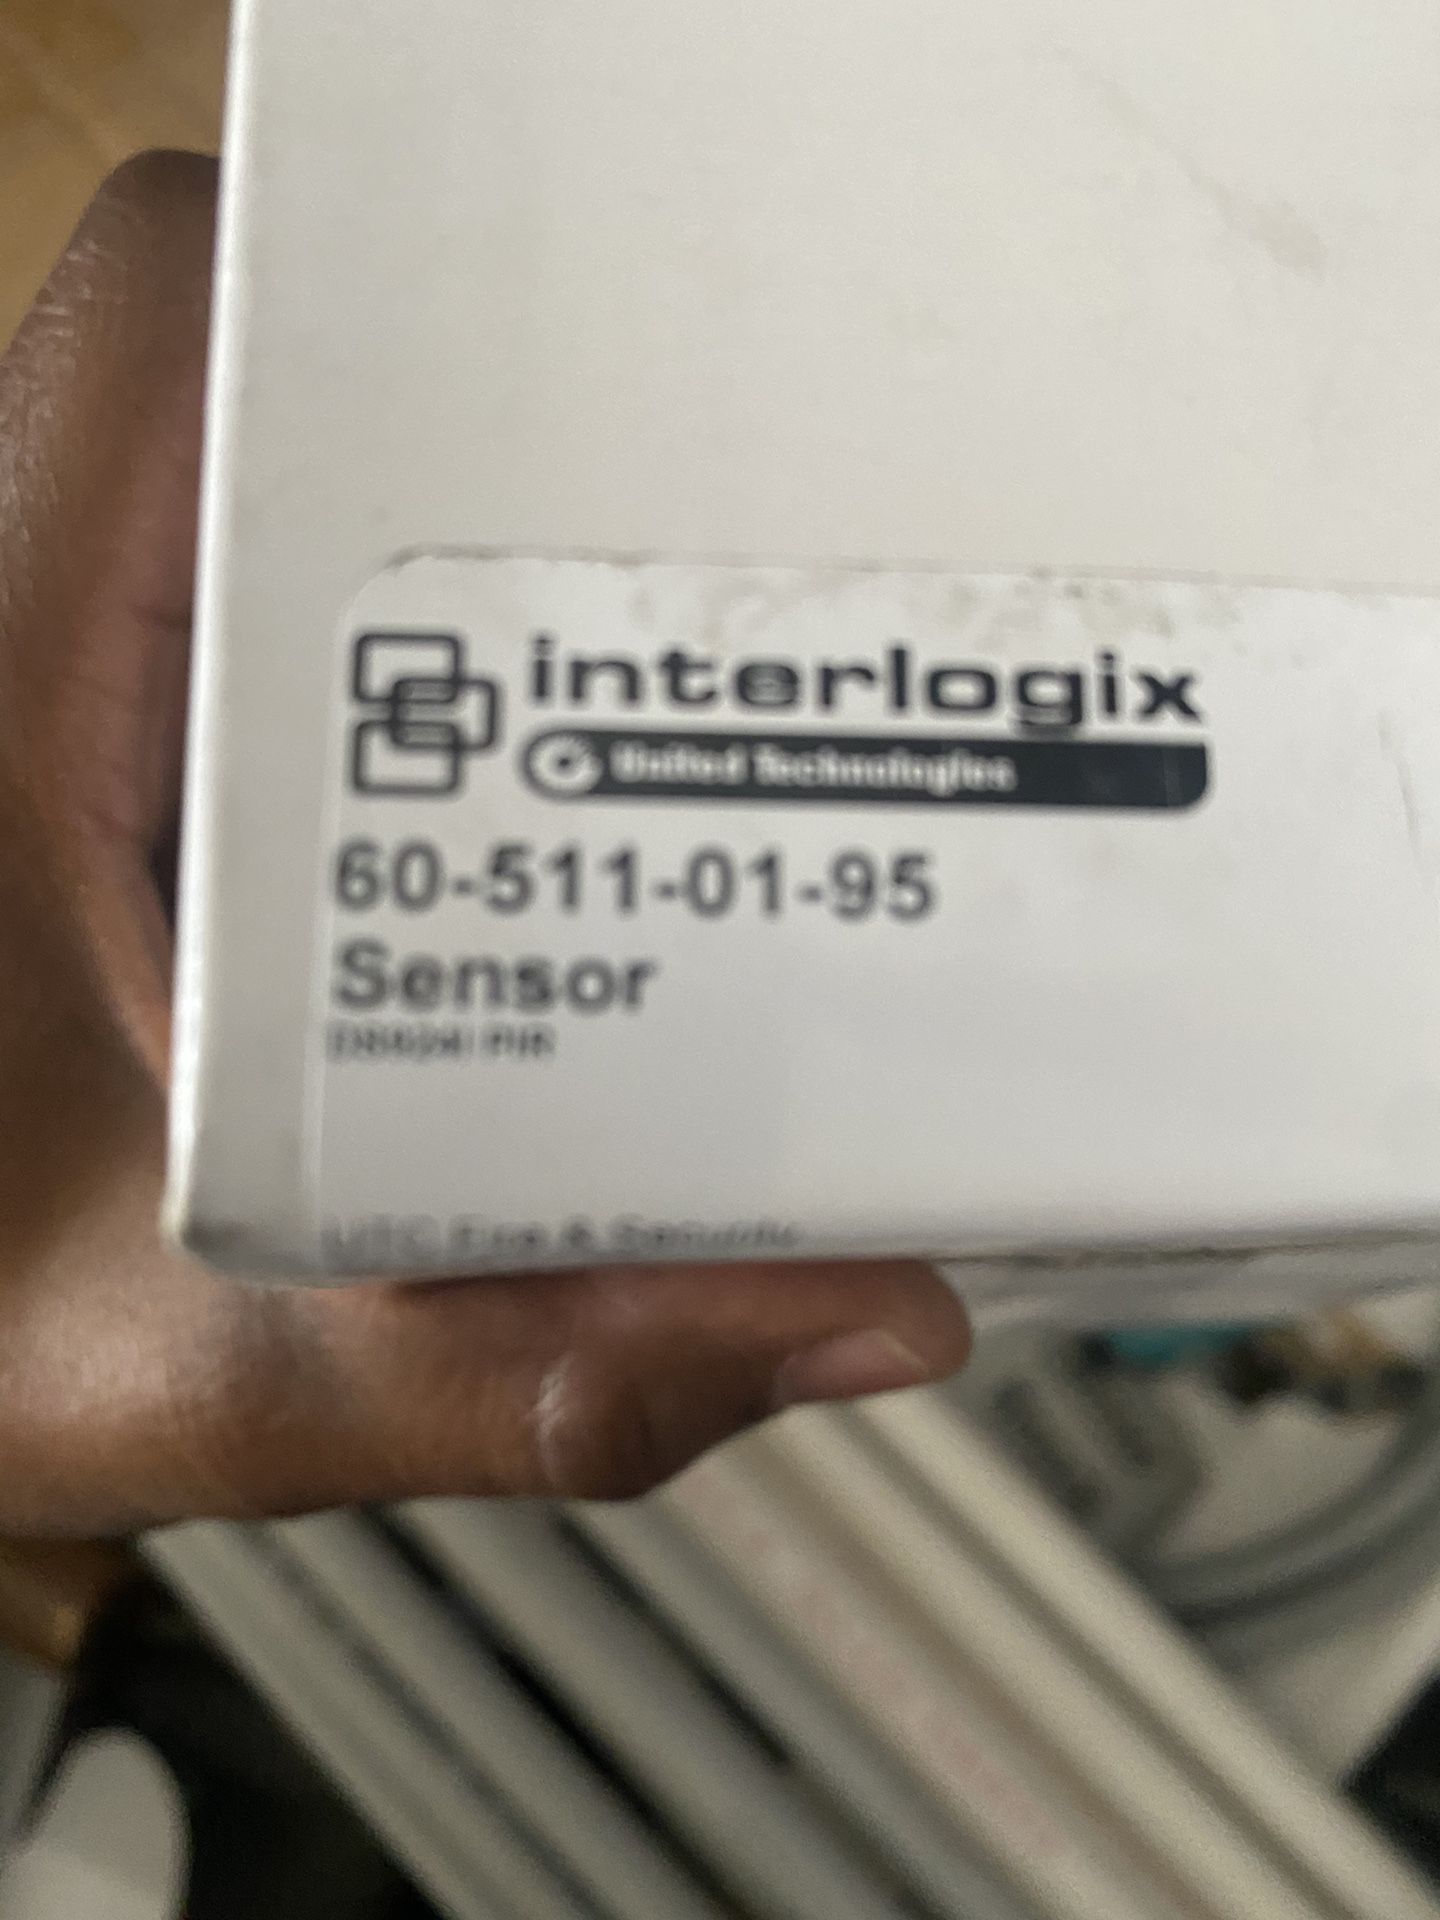 Interlogix 60-511-01-95